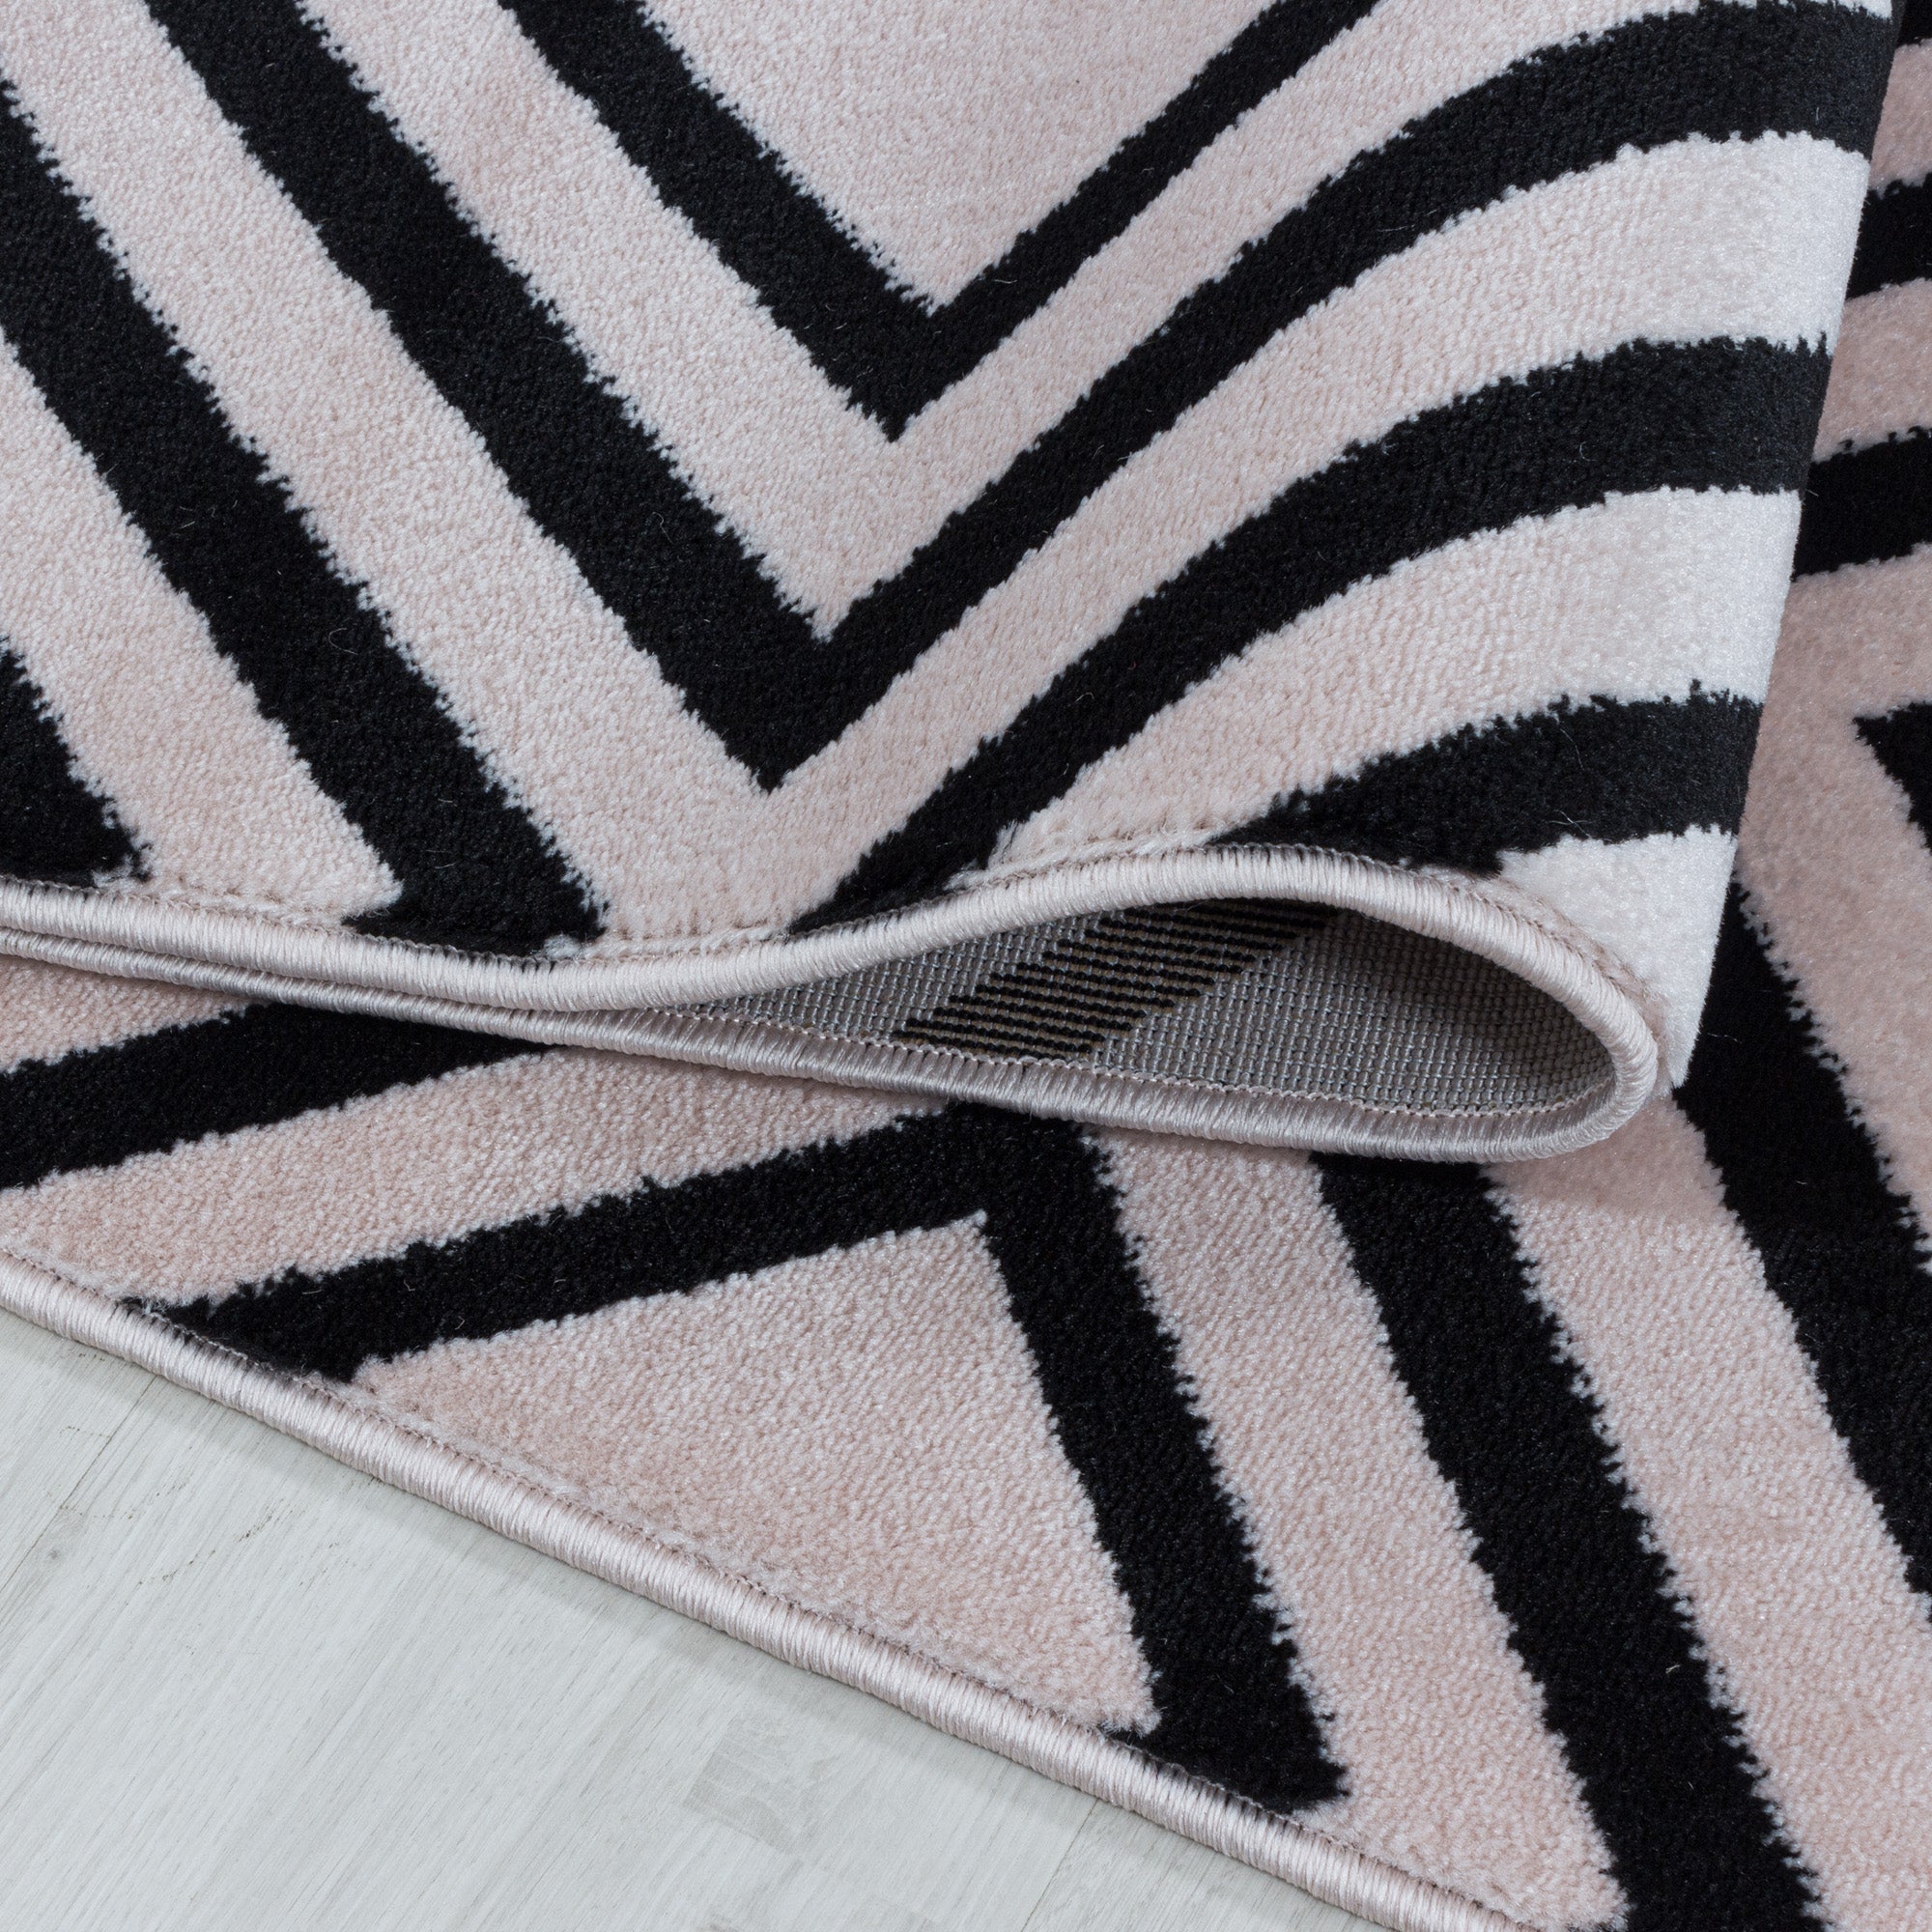 Kurzflor Teppich Set Schlafzimmer Läufer Rauten Gitter Design 3 Teile Pink